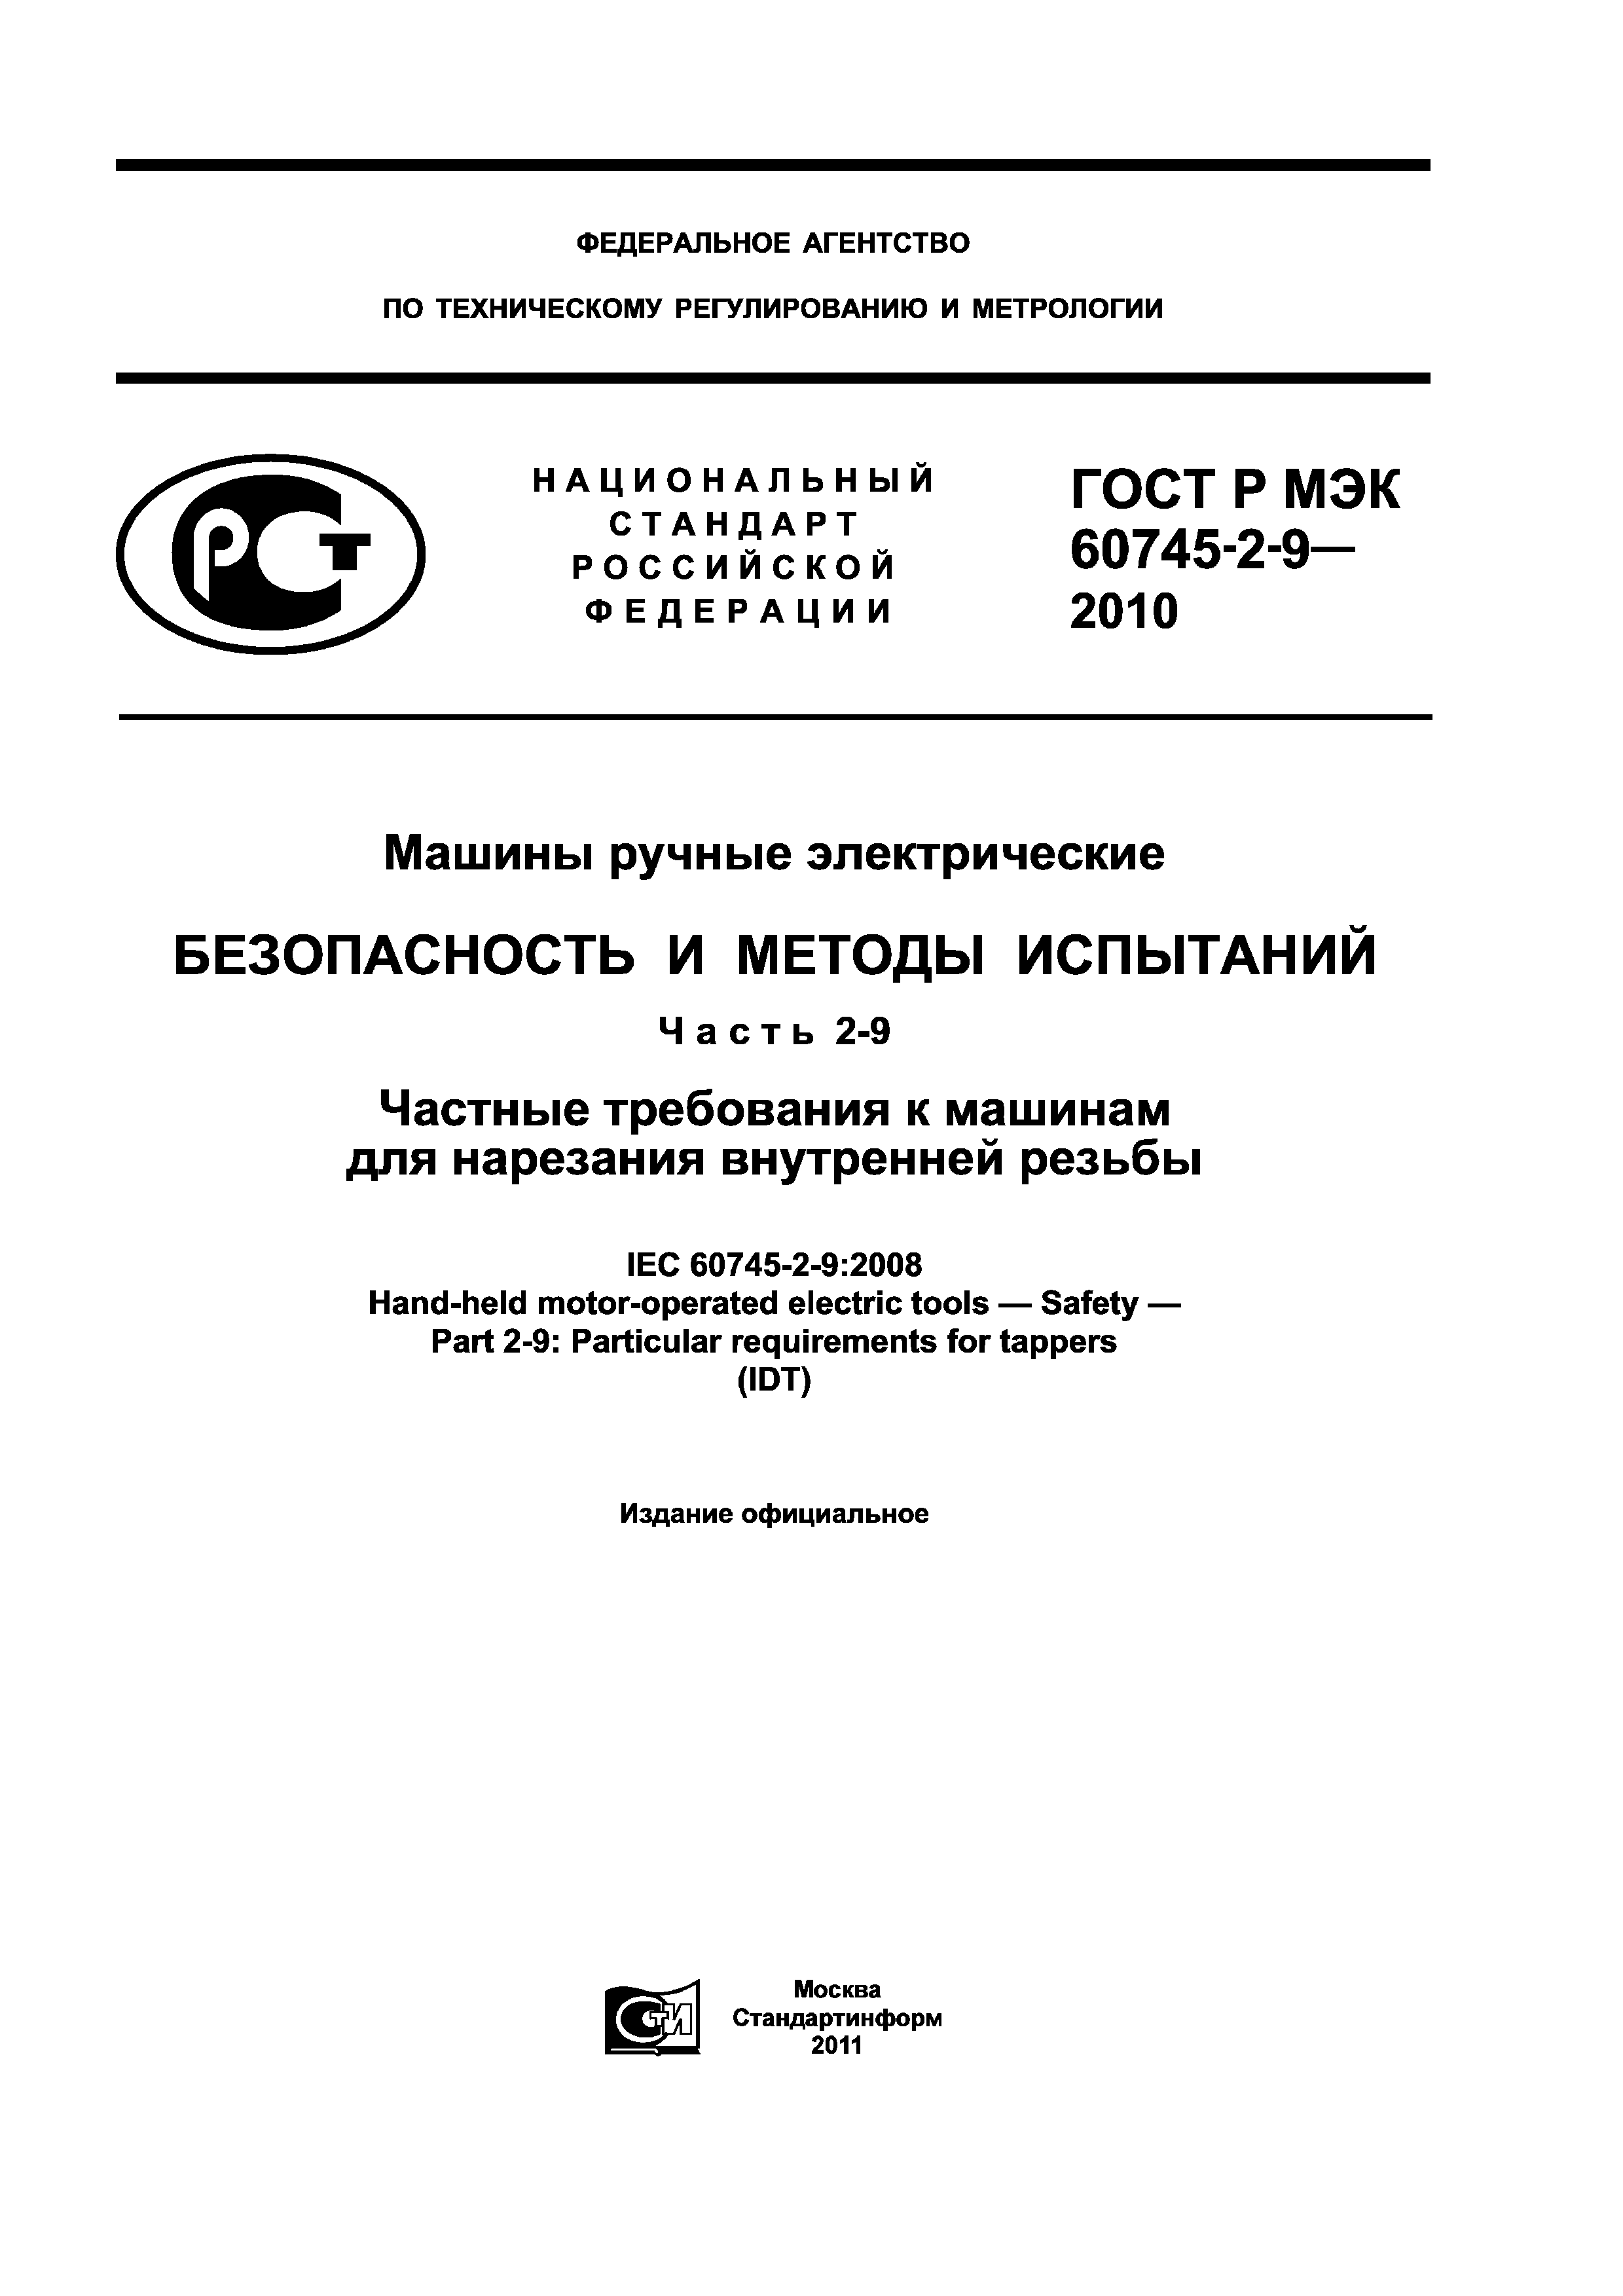 ГОСТ Р МЭК 60745-2-9-2010